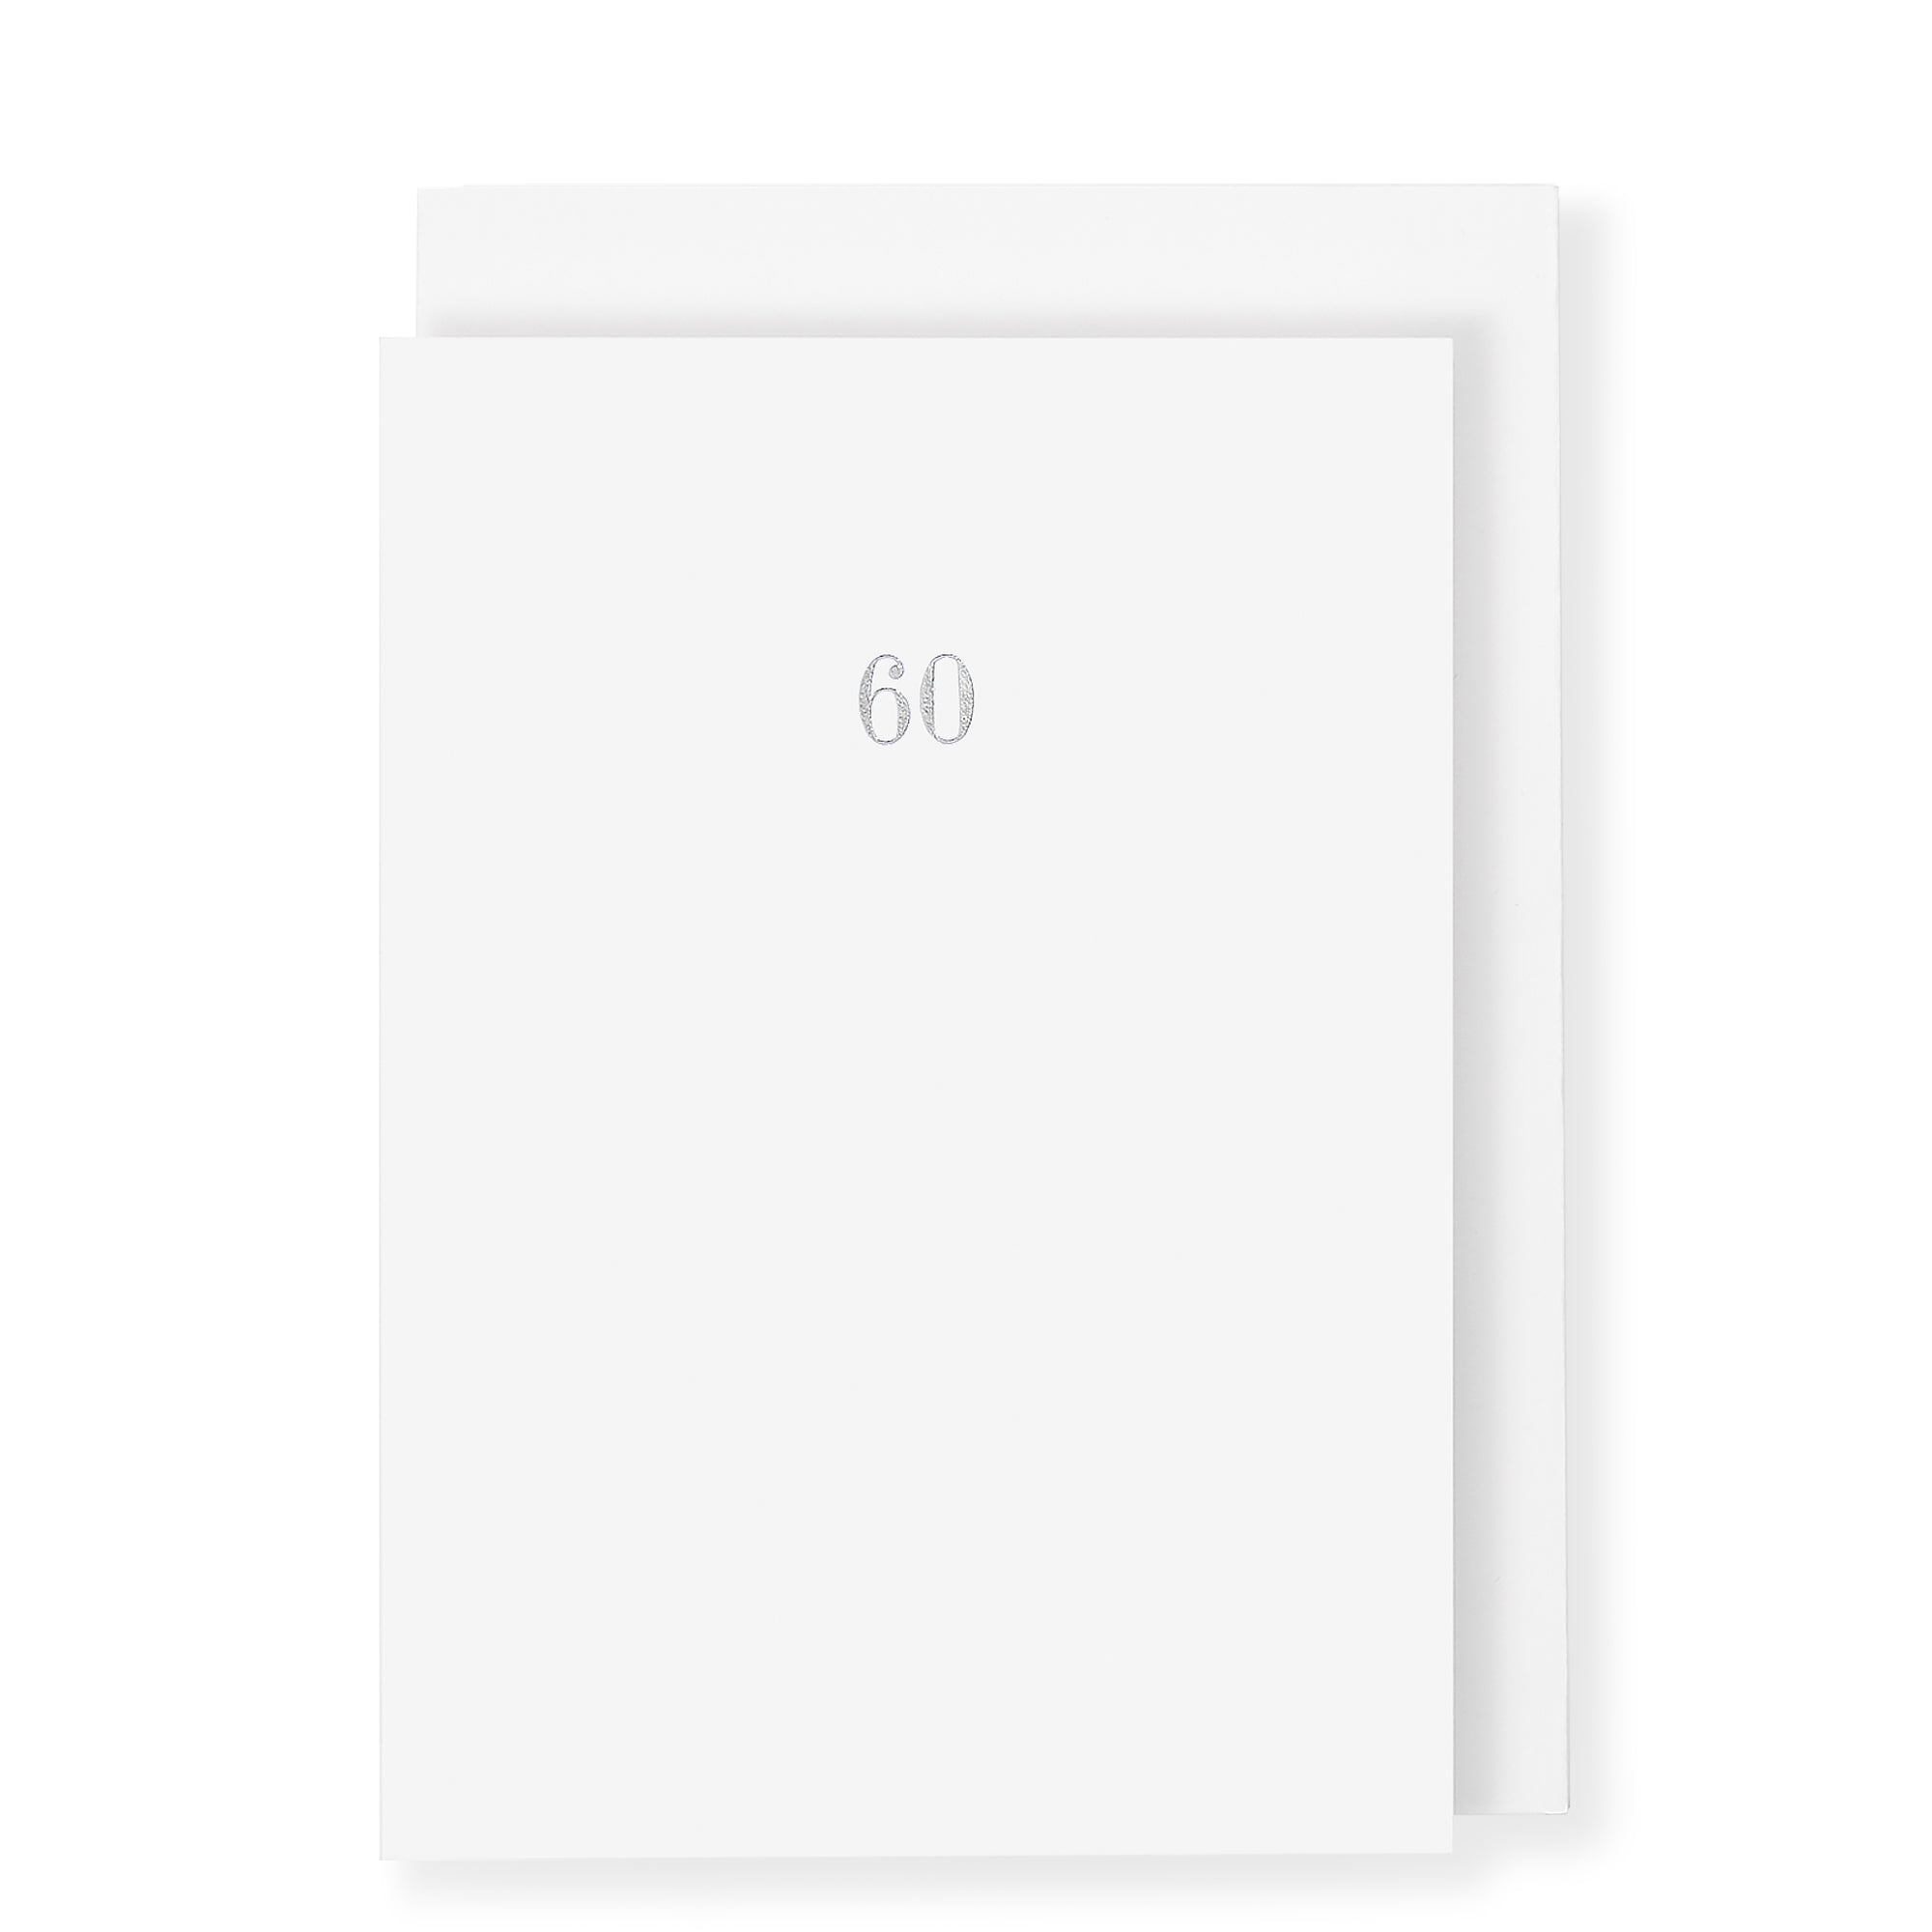 60th Birthday Milestone Anniversary Card, White